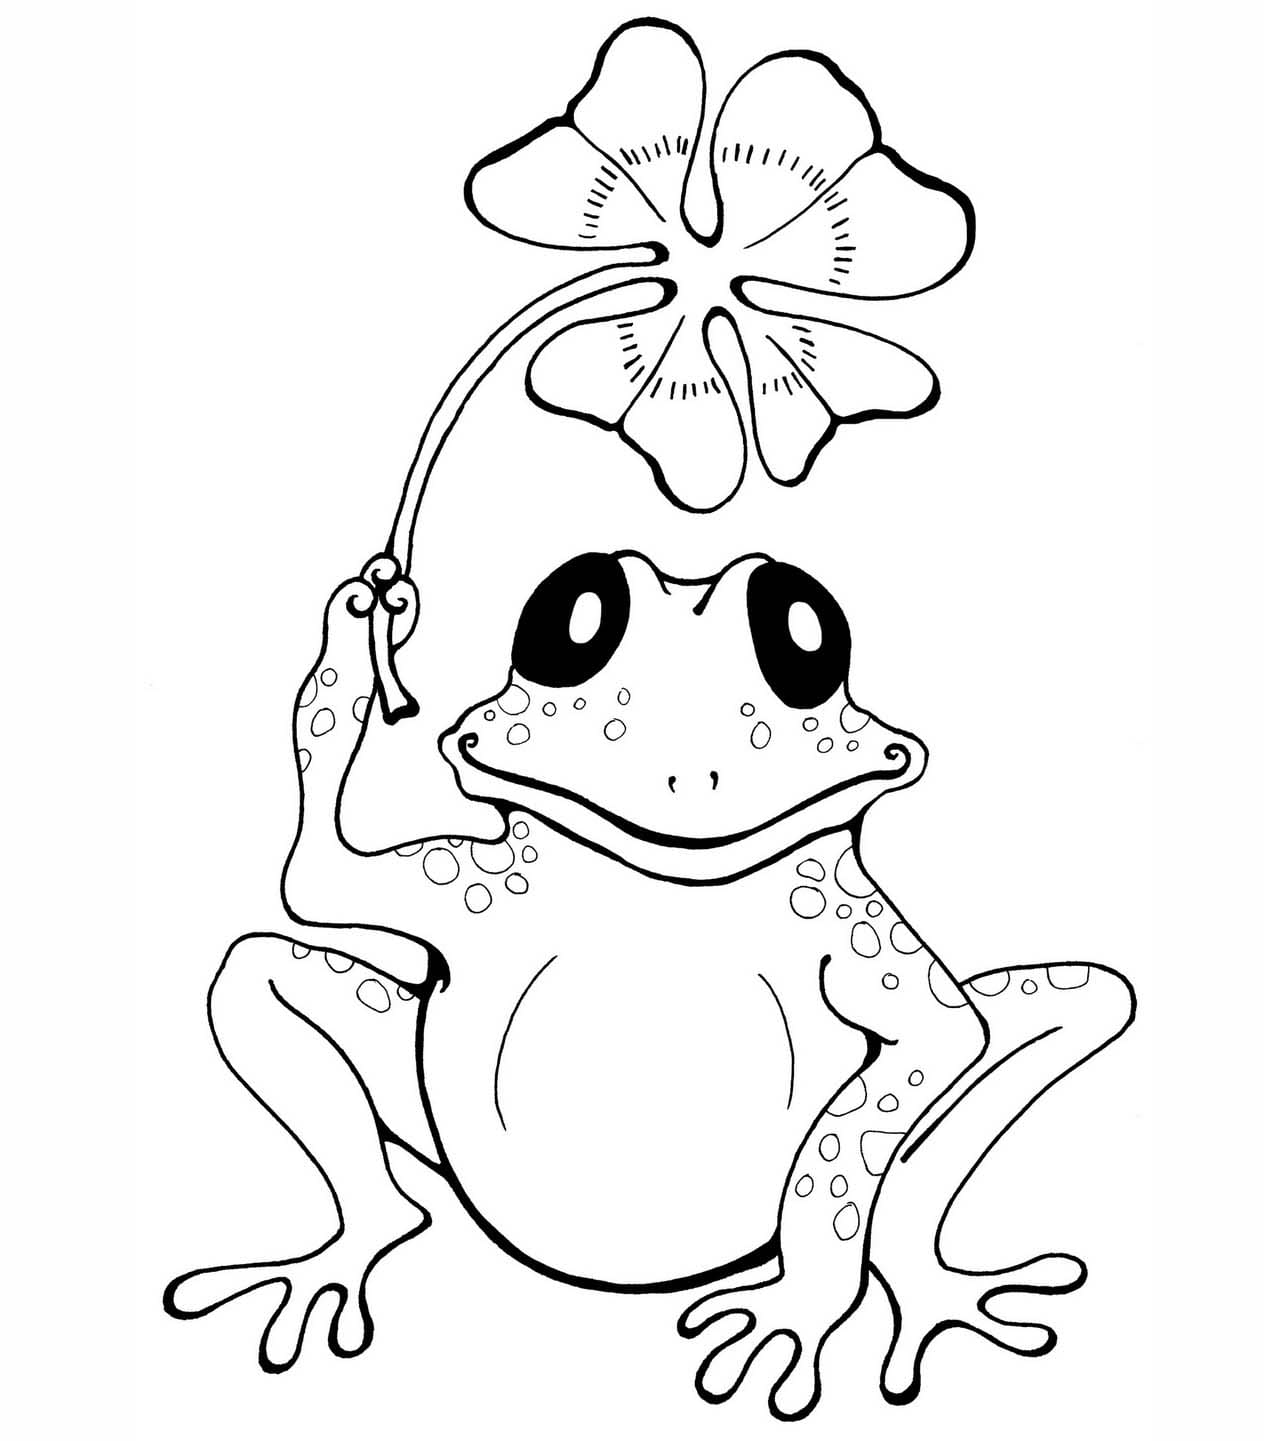 토끼풀과 귀여운 개구리 coloring page